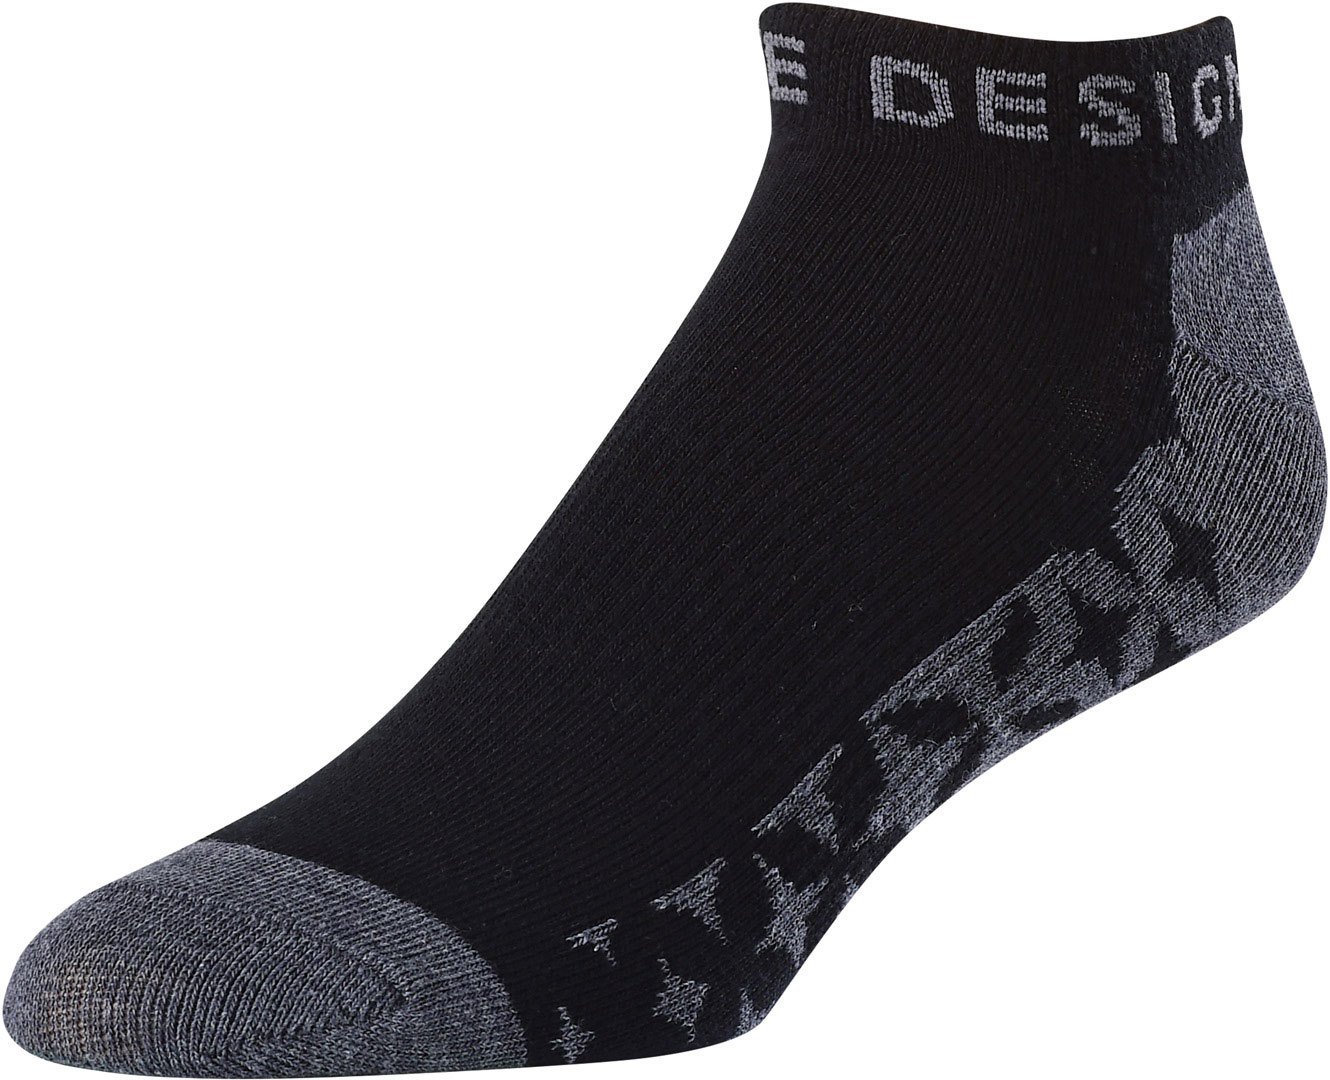 Troy Lee Designs Starburst Ankle Socken (3er Pack) Schwarz 45 46 47 48